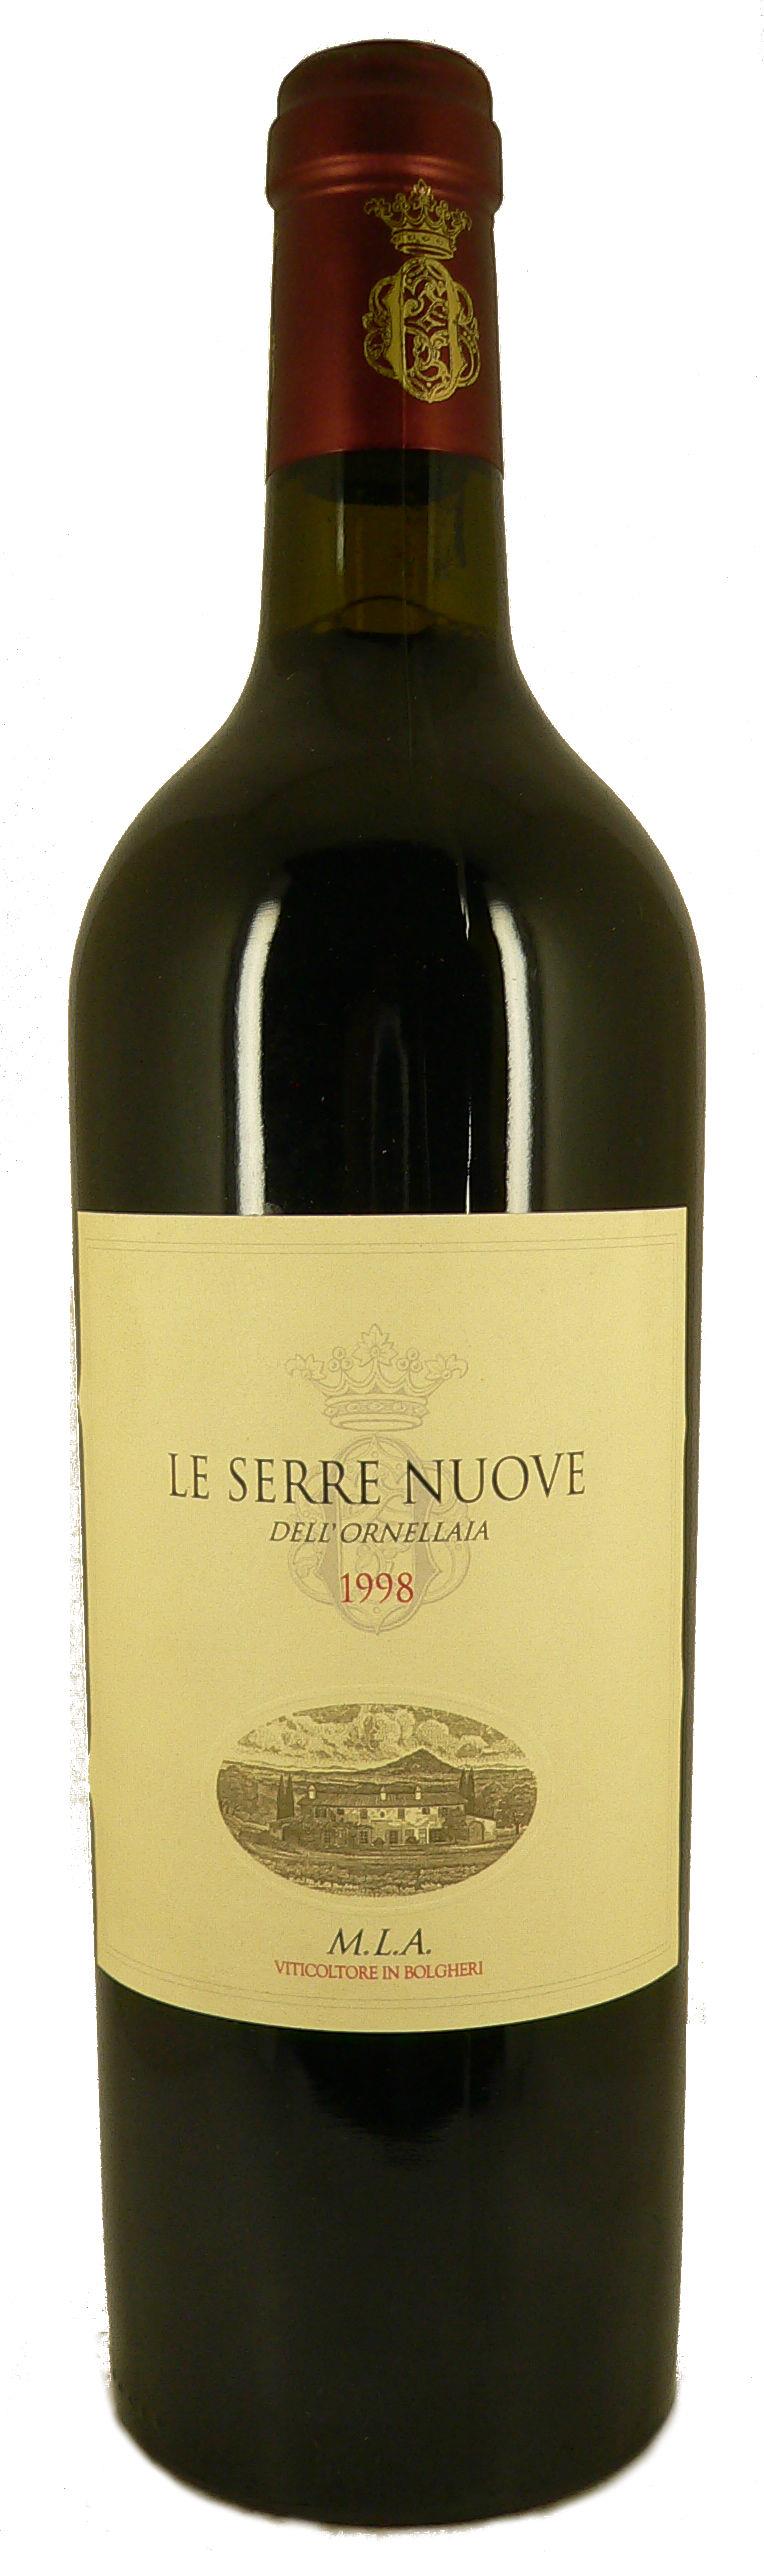 1998 Le Serre Nuove